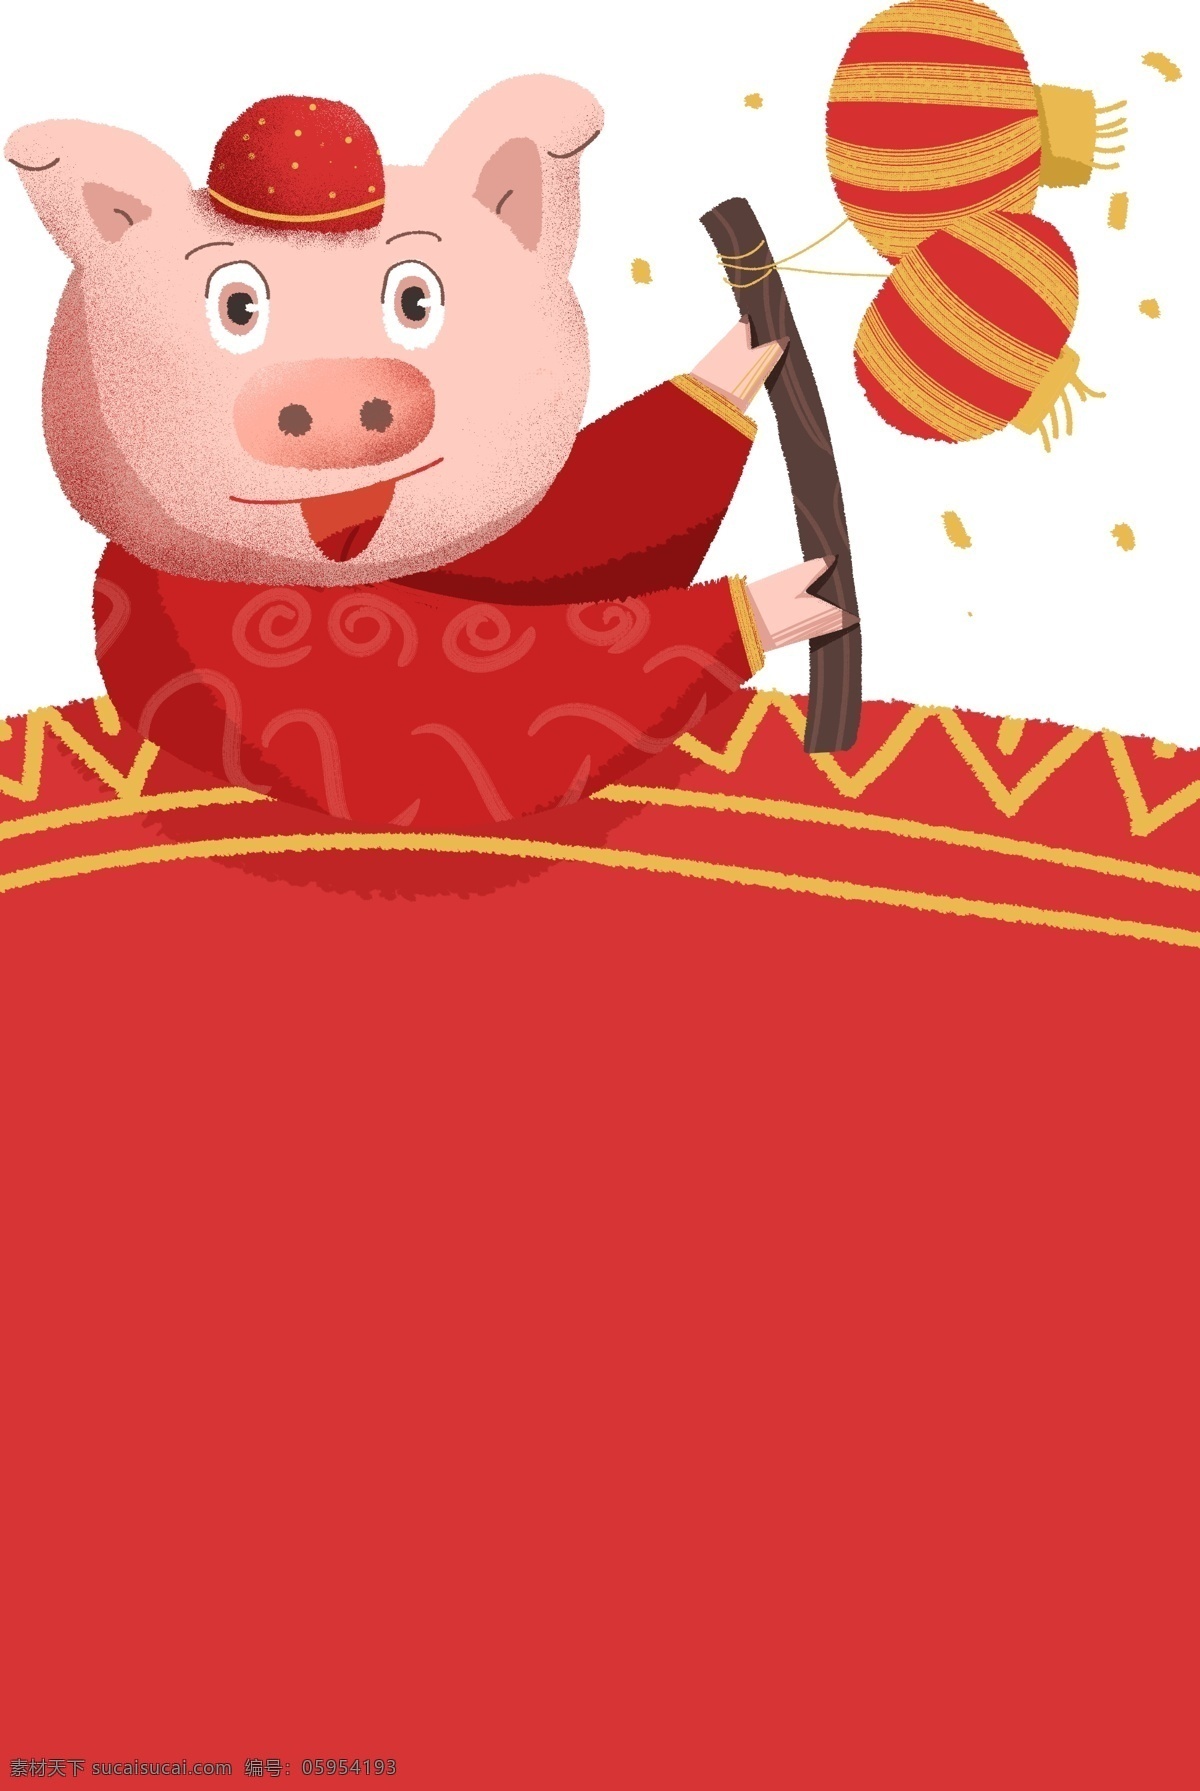 新年 小 猪 边框 插画 新年小猪边框 漂亮 手绘小猪边框 红色 灯笼 可爱 小猪边框插画